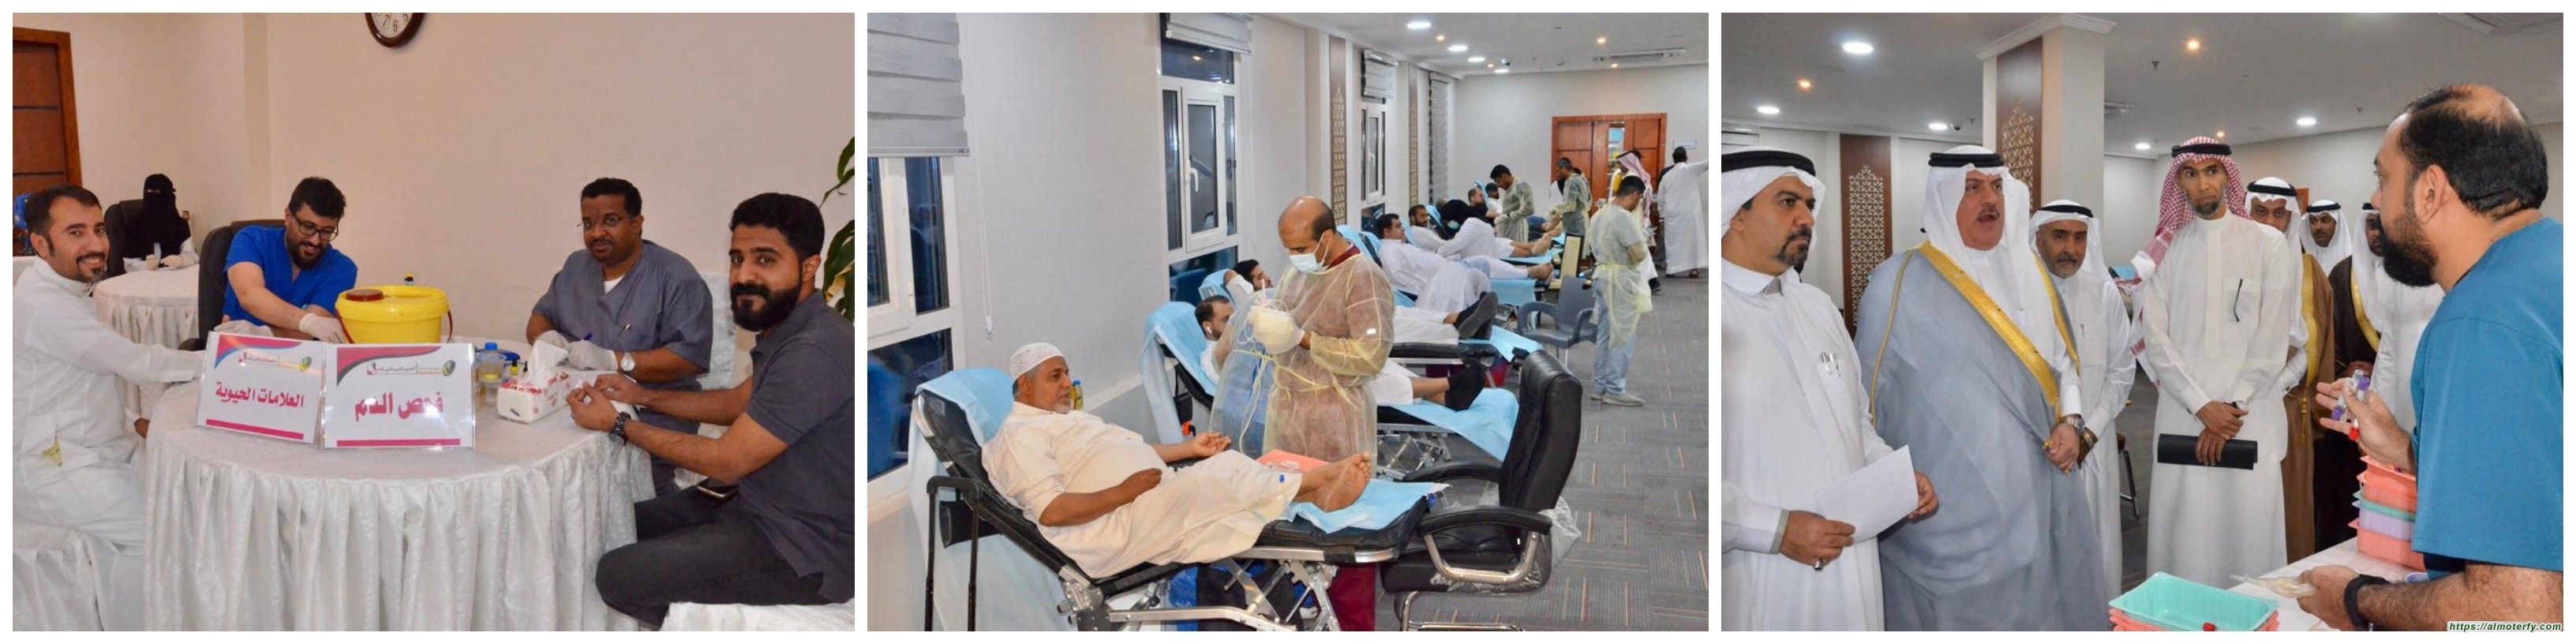 بحضور 398 متبرعا برالفيصلية ينهي بنجاح حملته الثامنة والعشرين للتبرع بالدم .